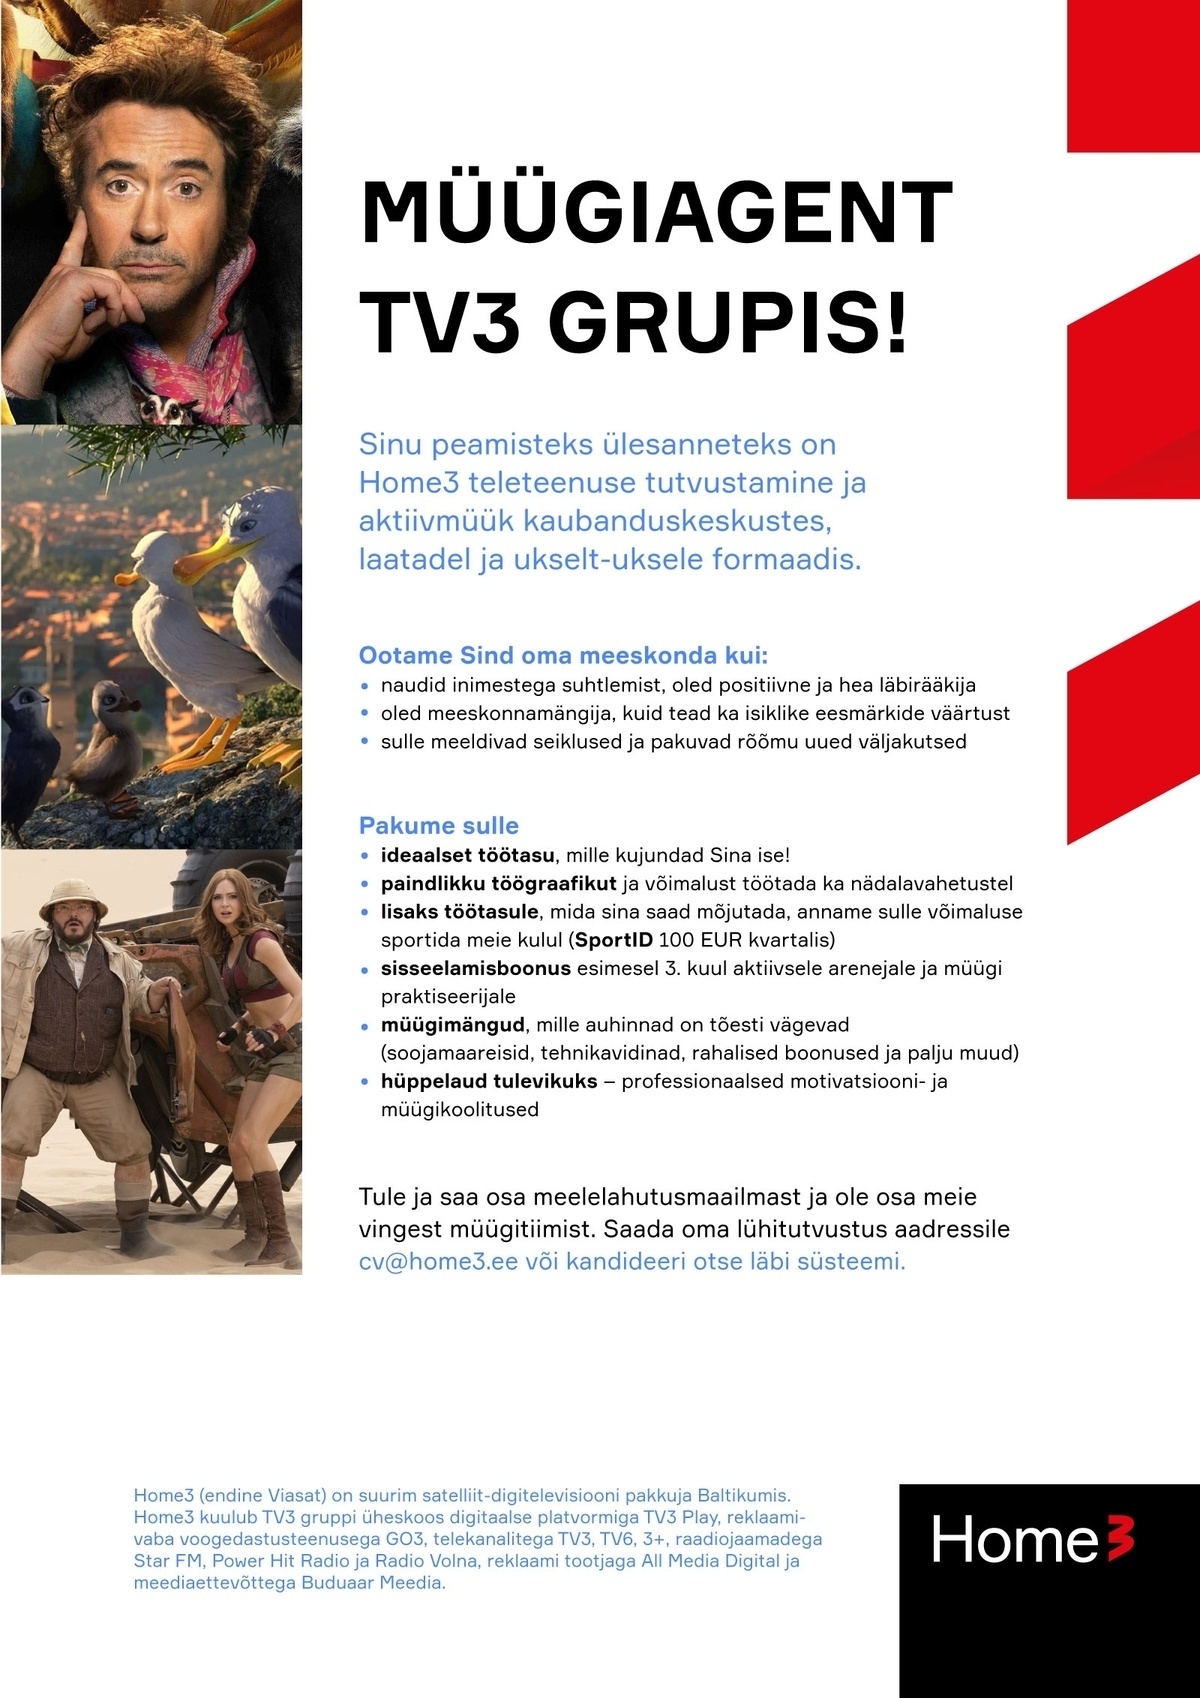 TV PLAY BALTICS AS Müügispetsialist Pärnus! Tule tööle TV3 gruppi!